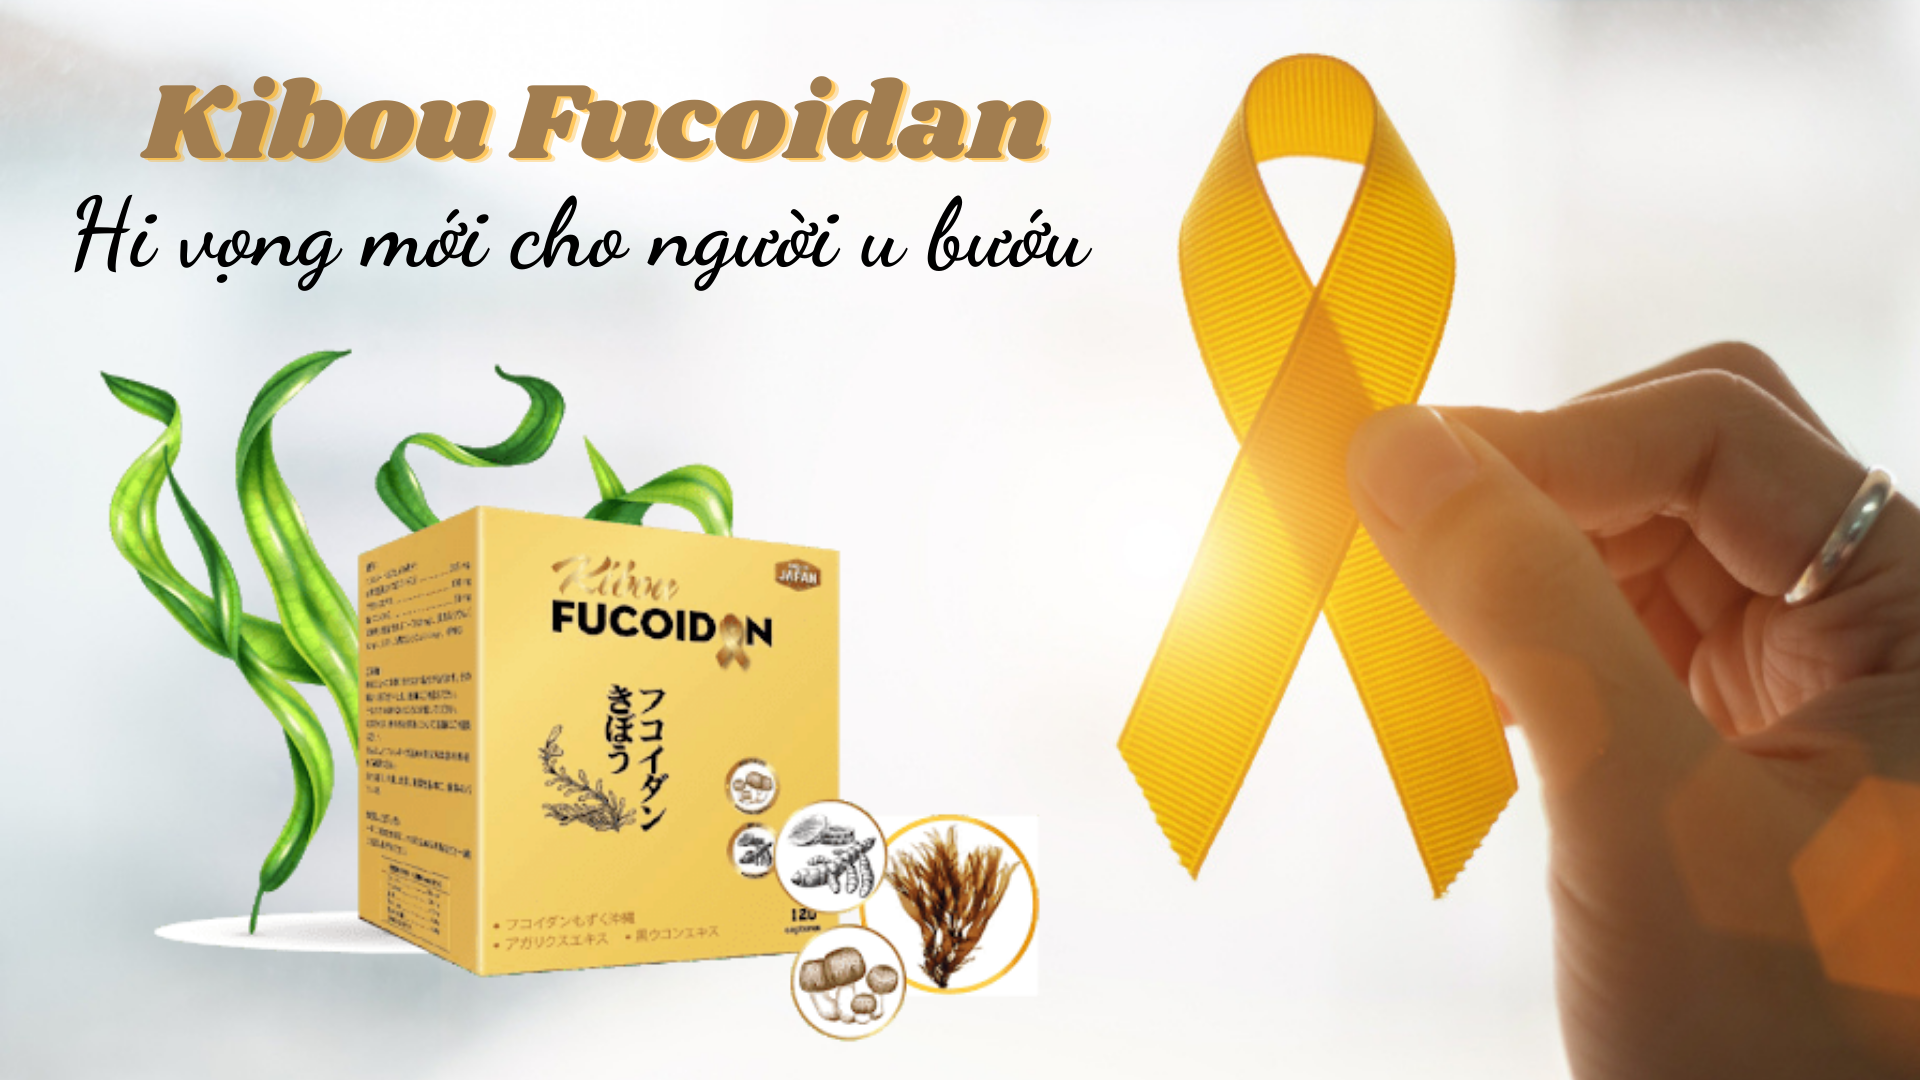 Kibou Fucoidan – sự kết hợp lần đầu tiên giữa “bộ 3 tinh chất vàng”: Fucoidan, Nghệ đen và Nấm Agaricus, có độ tinh khiết cao nhất hiện nay